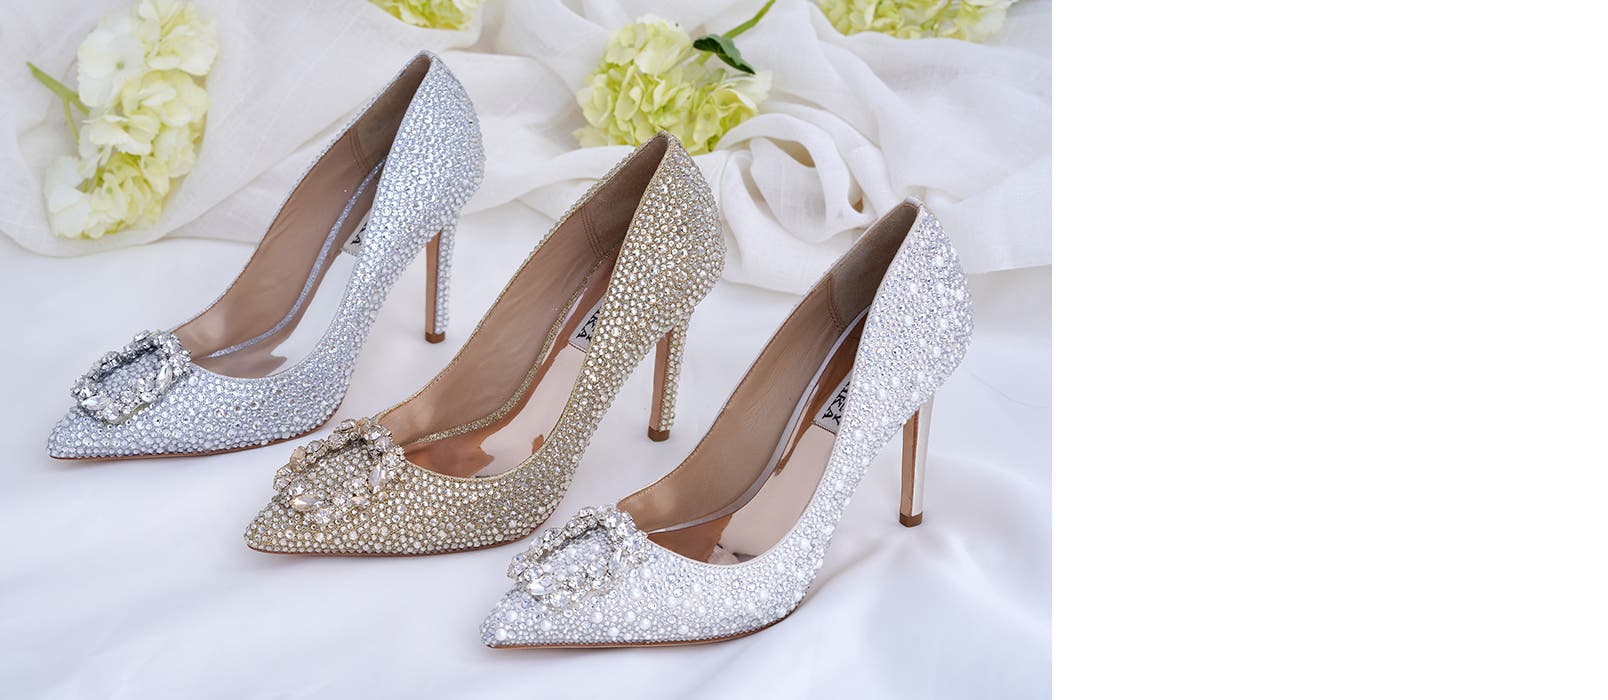 Crystal-embellished high heels from Badgley Mischka.